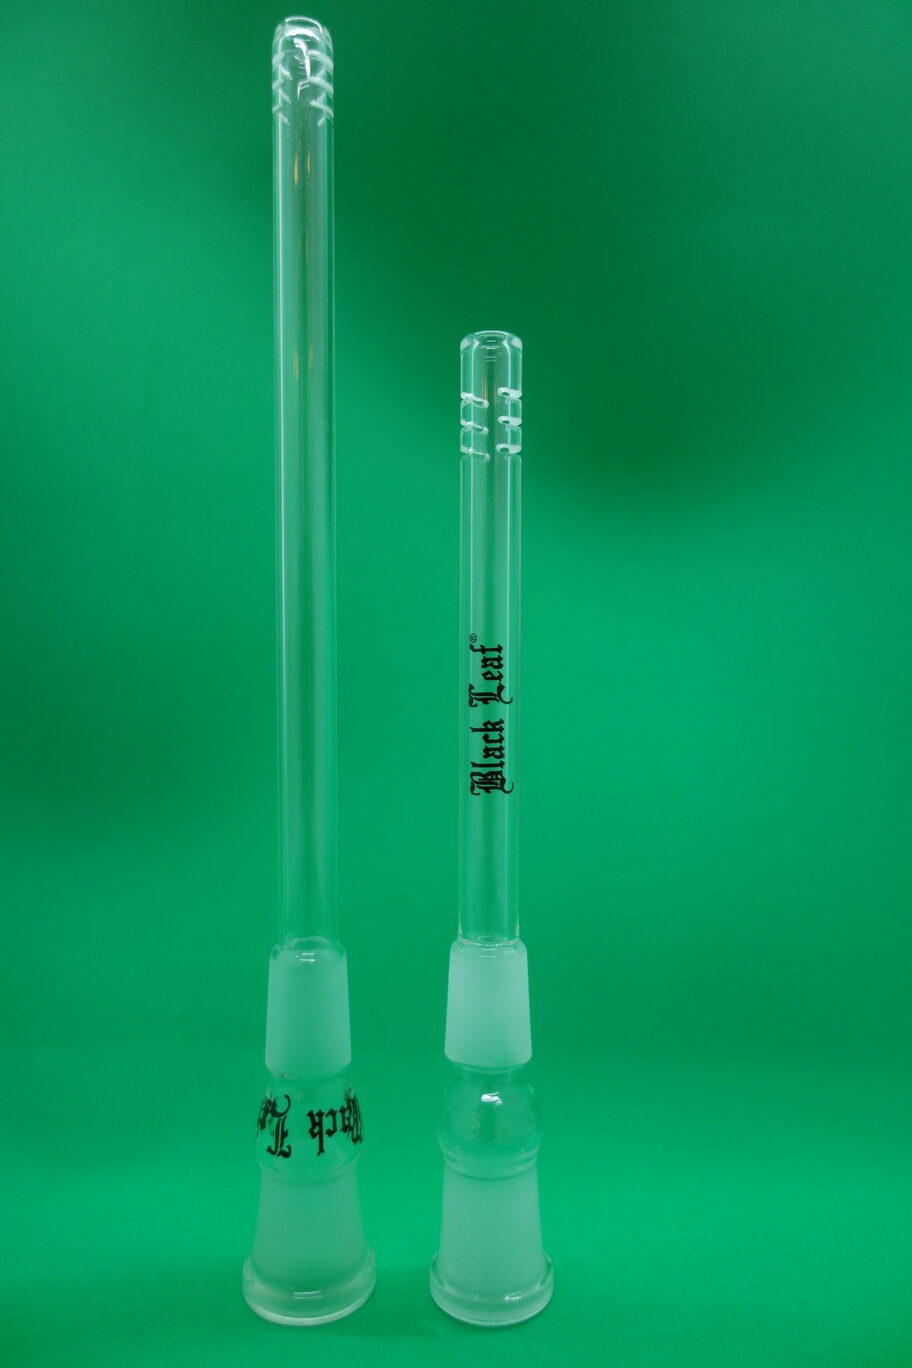 Glas-Chillumg mit Black Leaf Aufschrift und Schlitzen zur besseren Kühlung (Schlitzdiffusor) in verschiedenen Längen